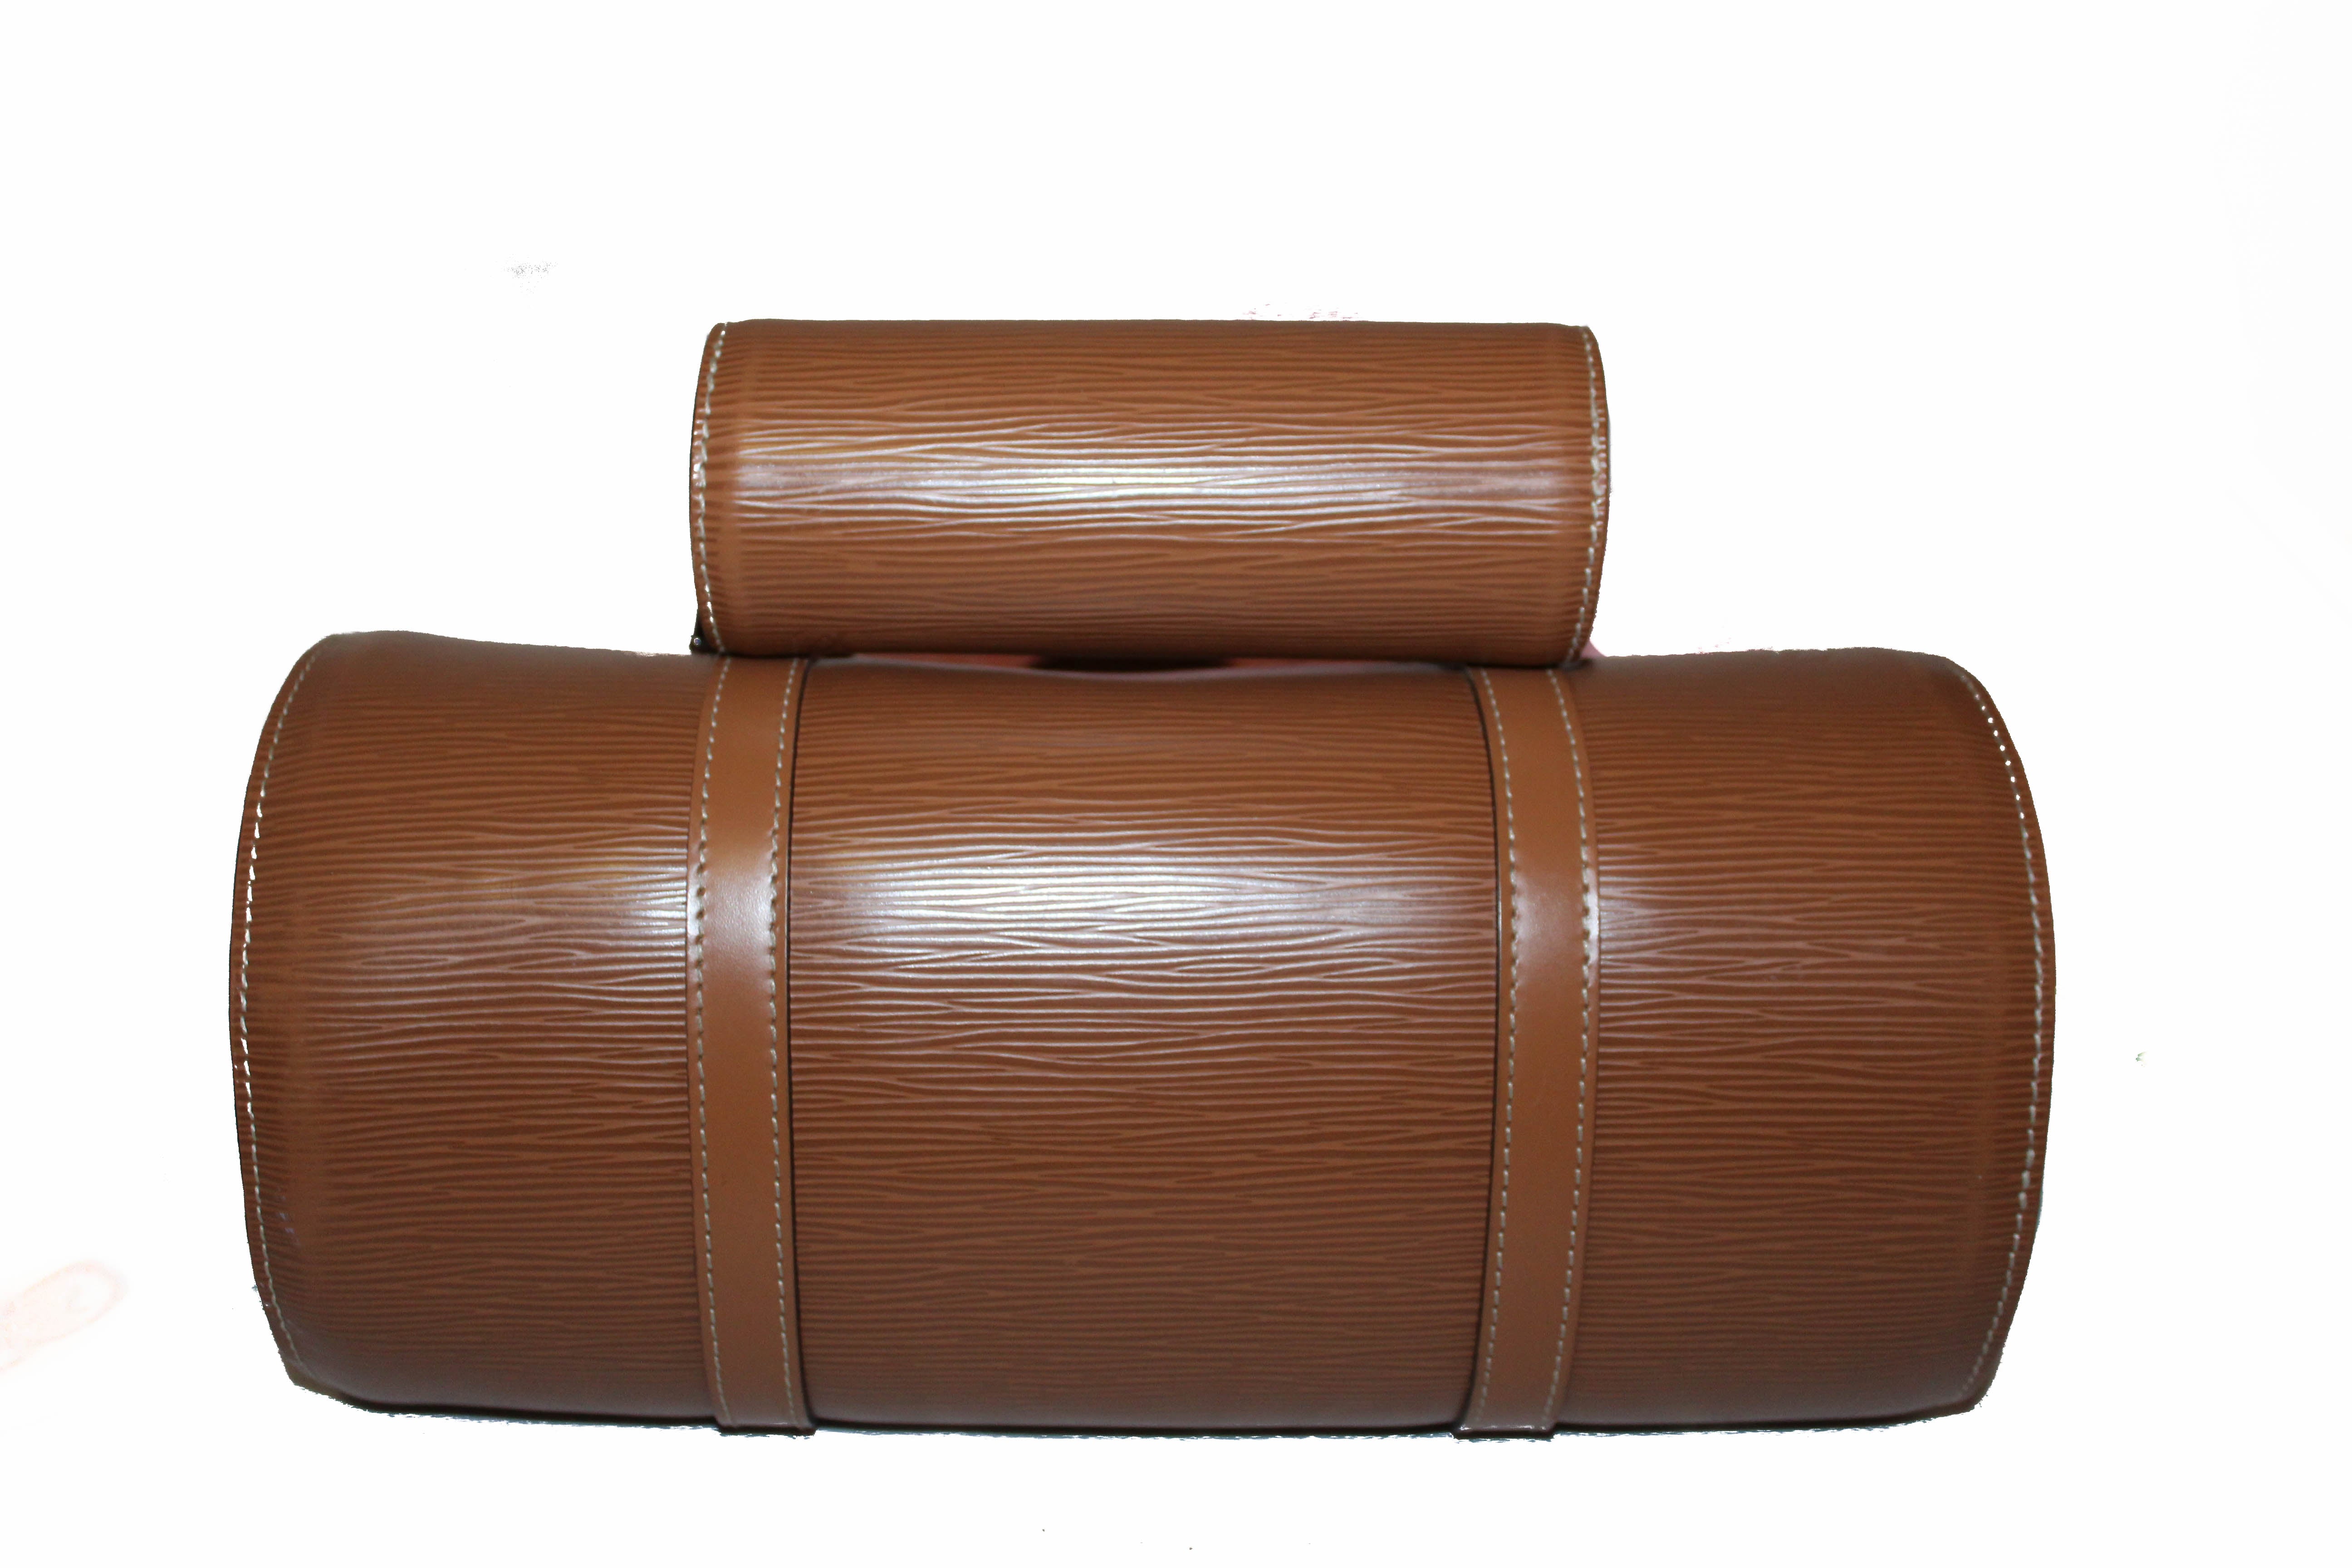 Authentic Louis Vuitton Brown Epi Leather Soufflot Handbag with Mini Bag